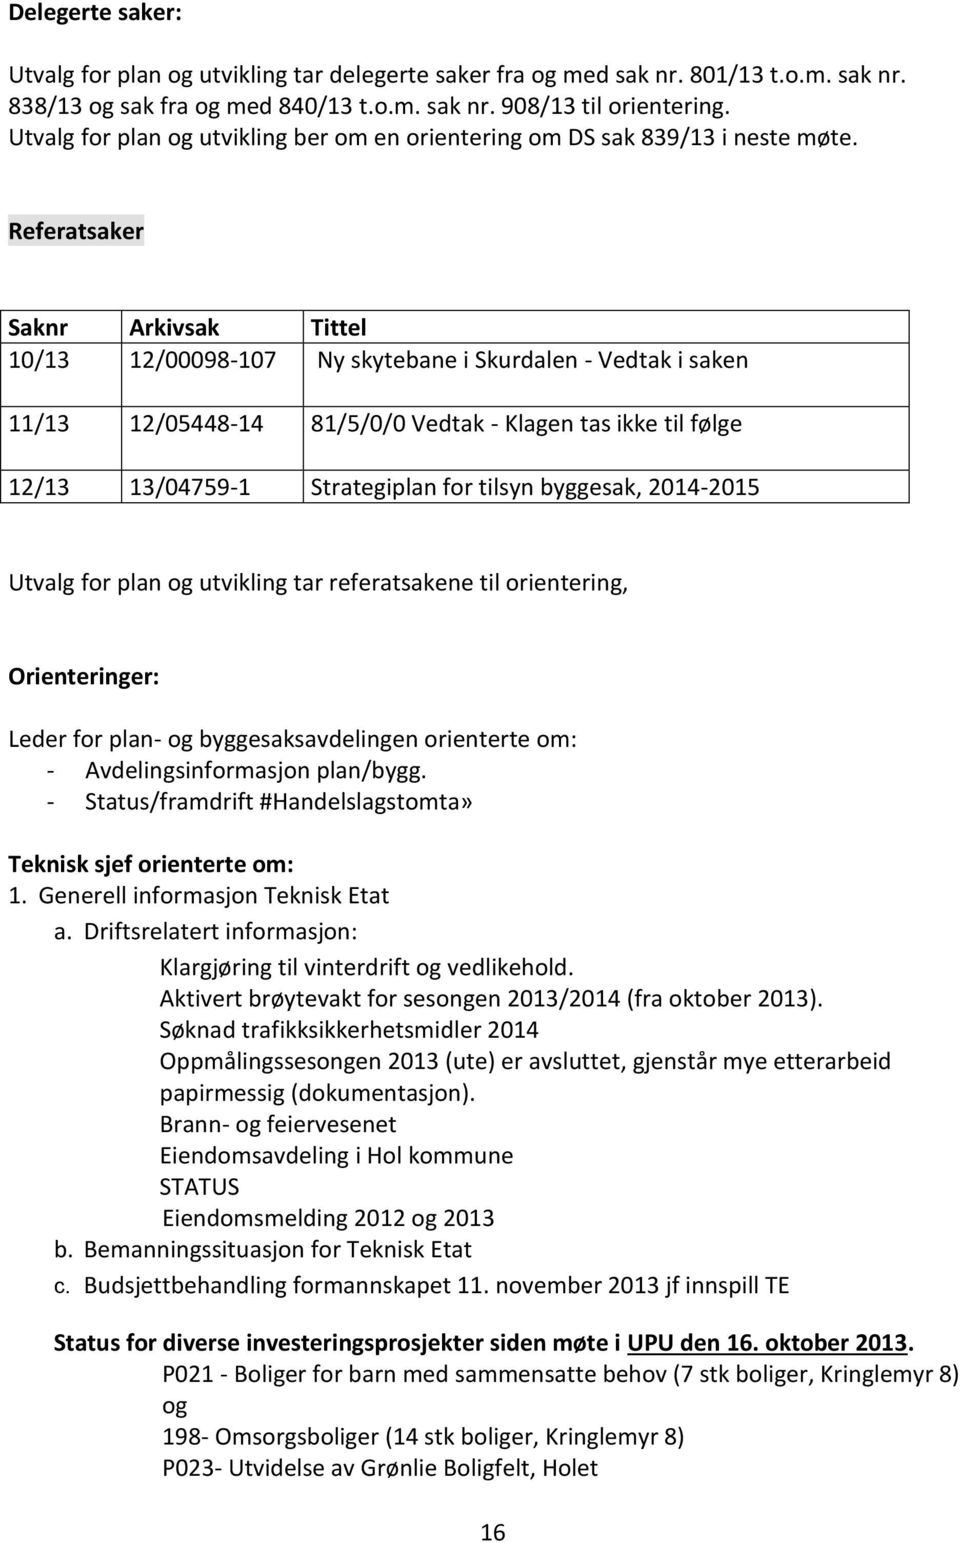 Referatsaker Saknr Arkivsak Tittel 10/13 12/00098-107 Ny skytebane i Skurdalen - Vedtak i saken 11/13 12/05448-14 81/5/0/0 Vedtak - Klagen tas ikke til følge 12/13 13/04759-1 Strategiplan for tilsyn